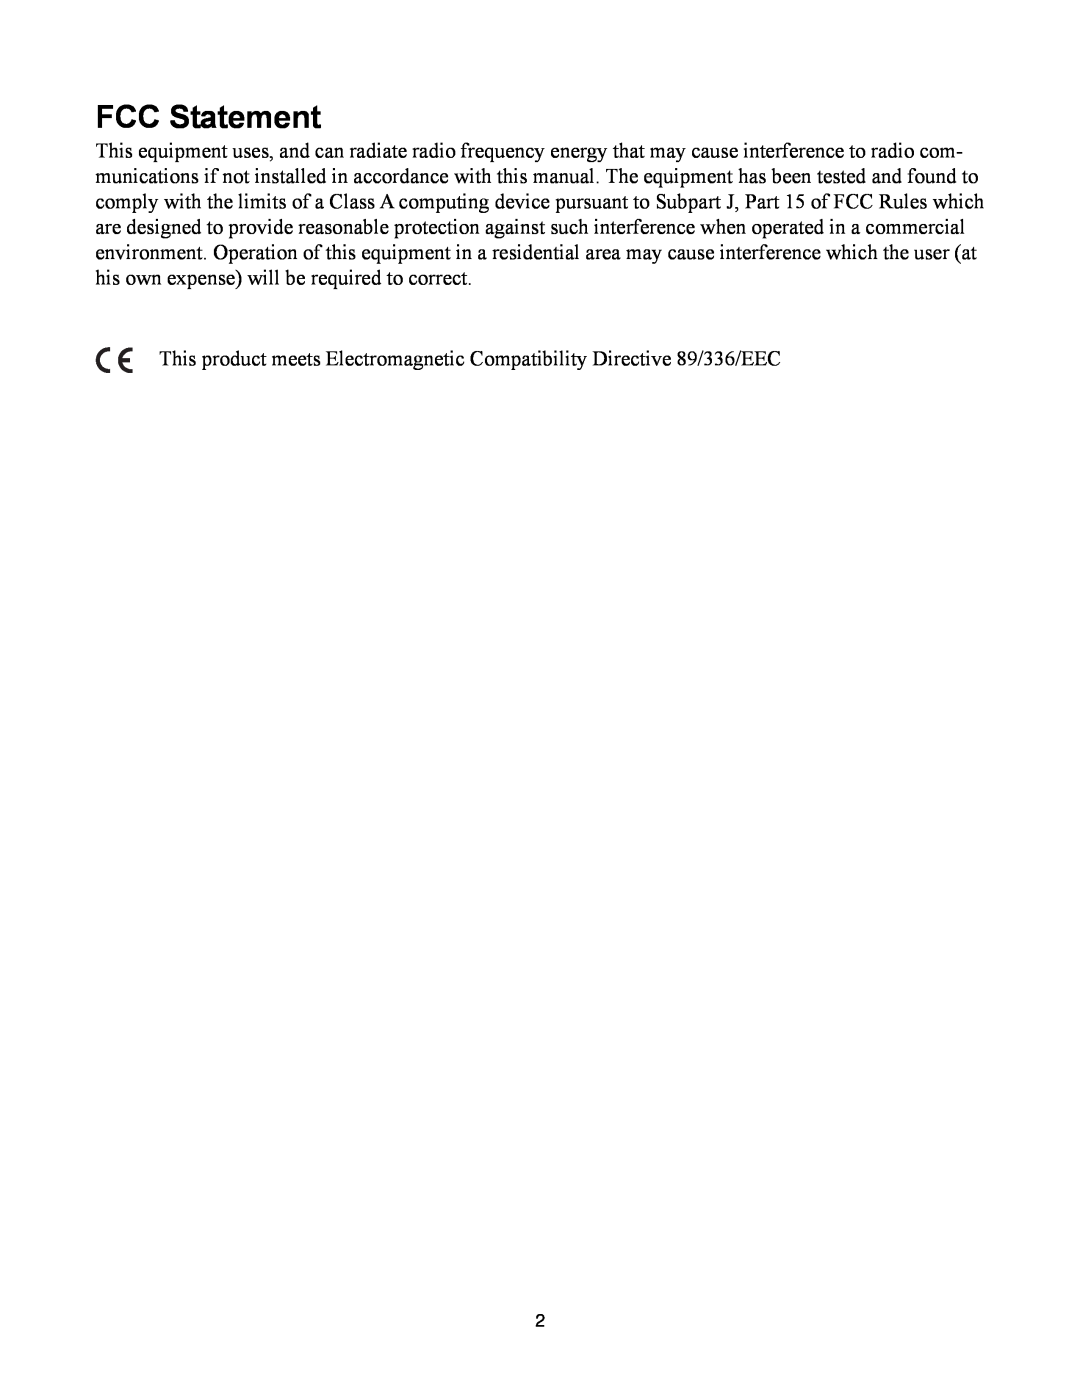 Telex SS-2002RM, SS-1002 manual FCC Statement 